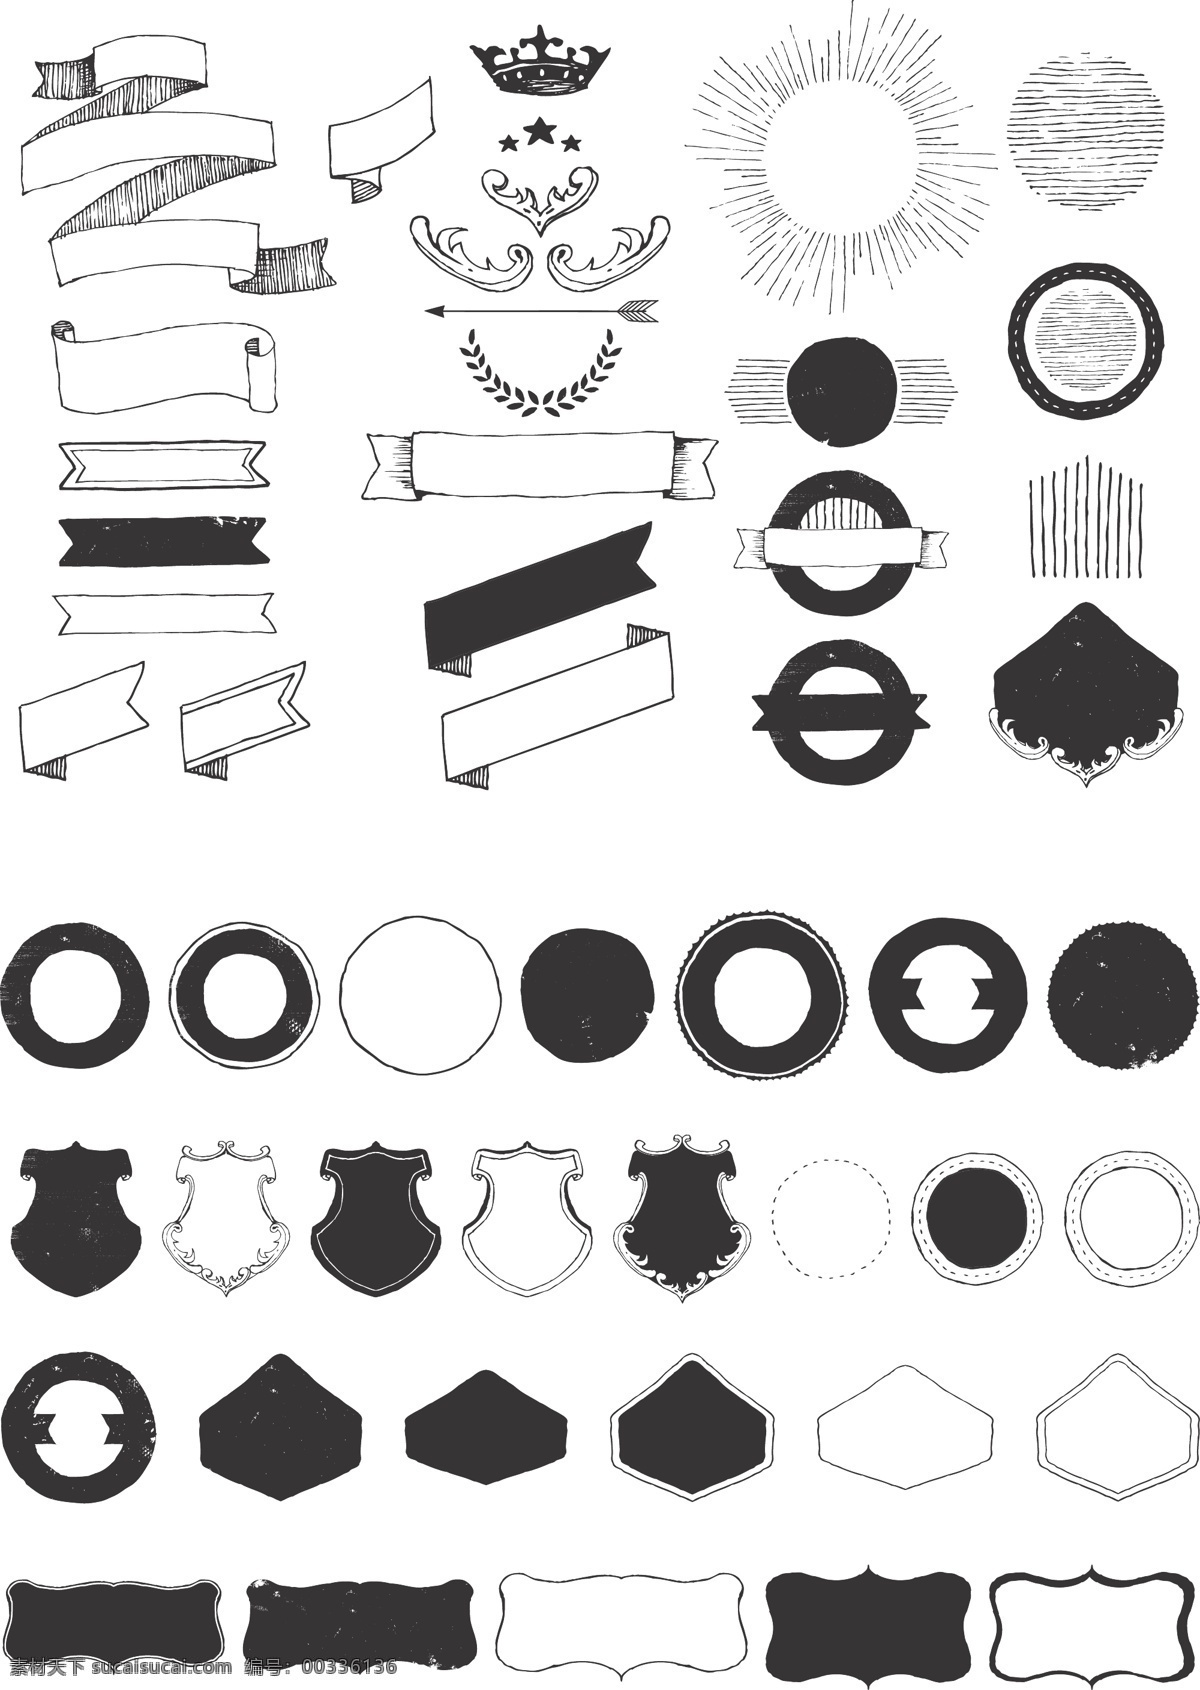 圆形 矢量 装饰 元素 原型 矢量素材 设计素材 背景素材